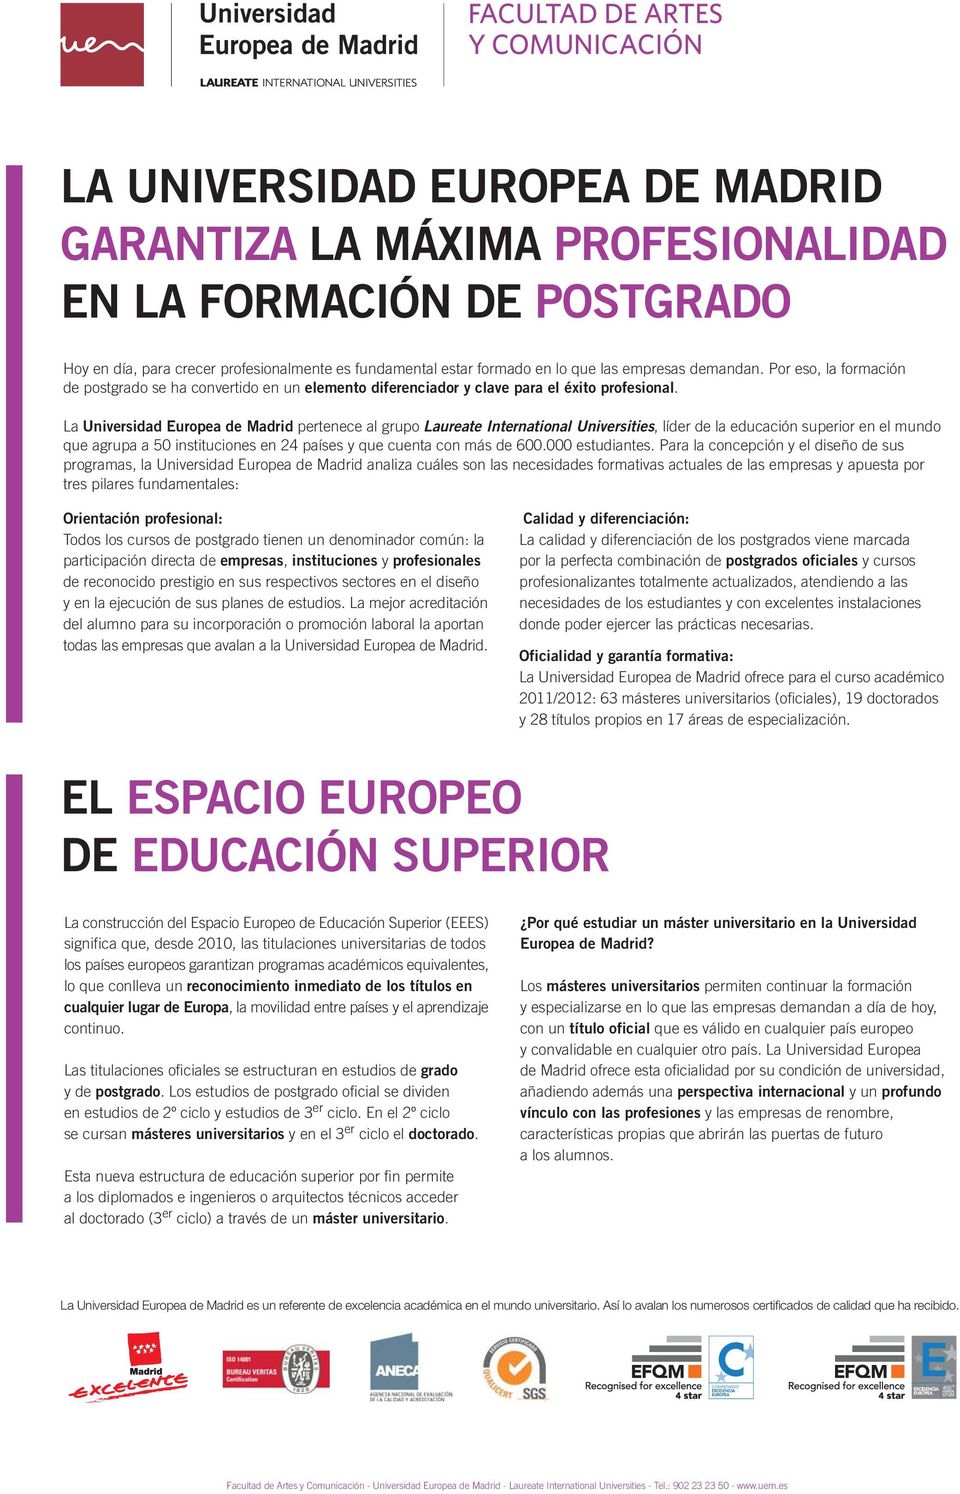 La Universidad Europea de Madrid pertenece al grupo Laureate International Universities, líder de la educación superior en el mundo que agrupa a 50 instituciones en 24 países y que cuenta con más de